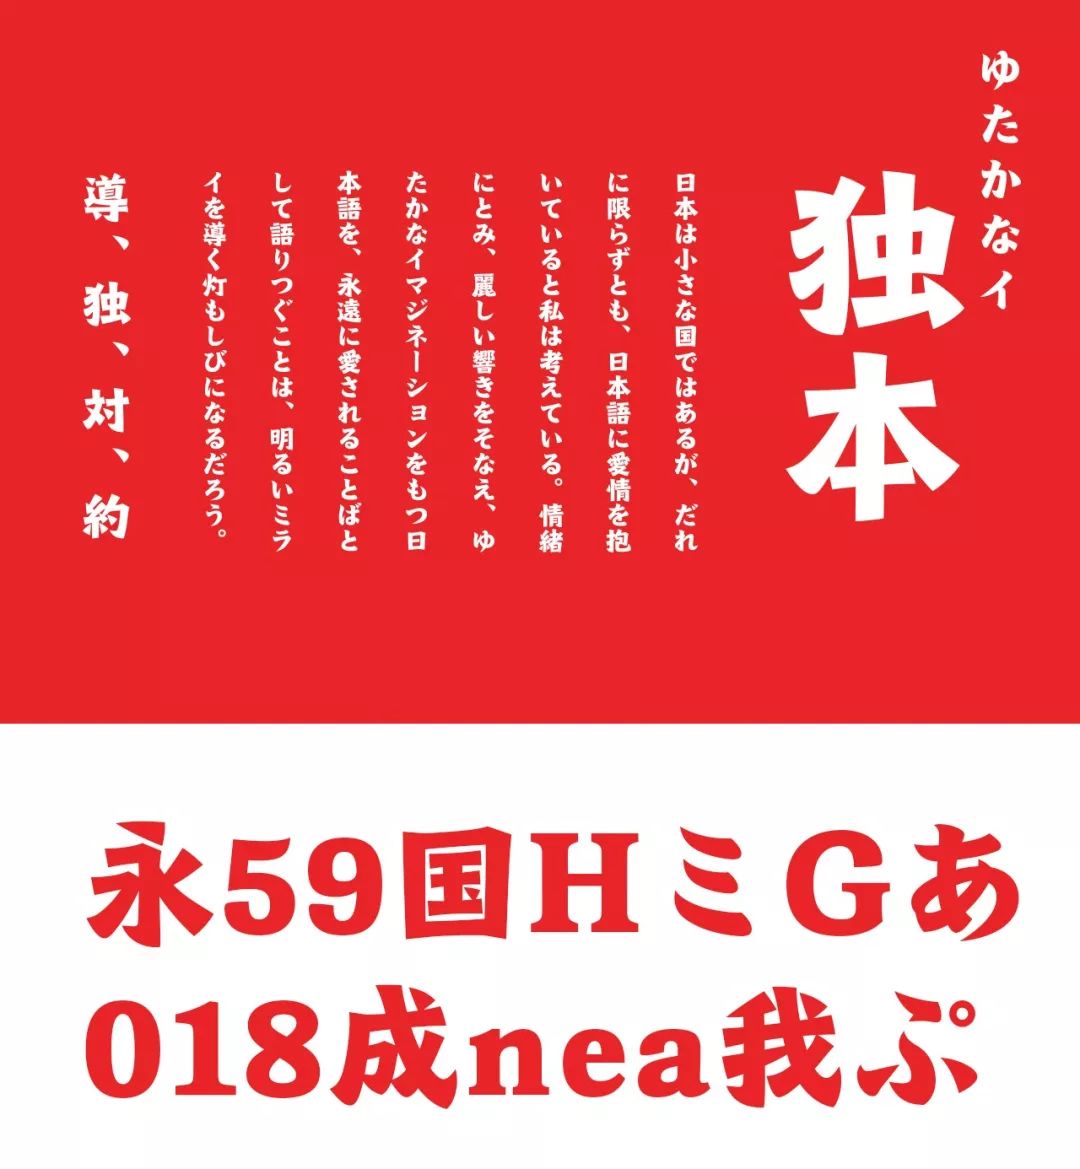 日本森泽字体设计大赛(morisawa type design competition)是由日本